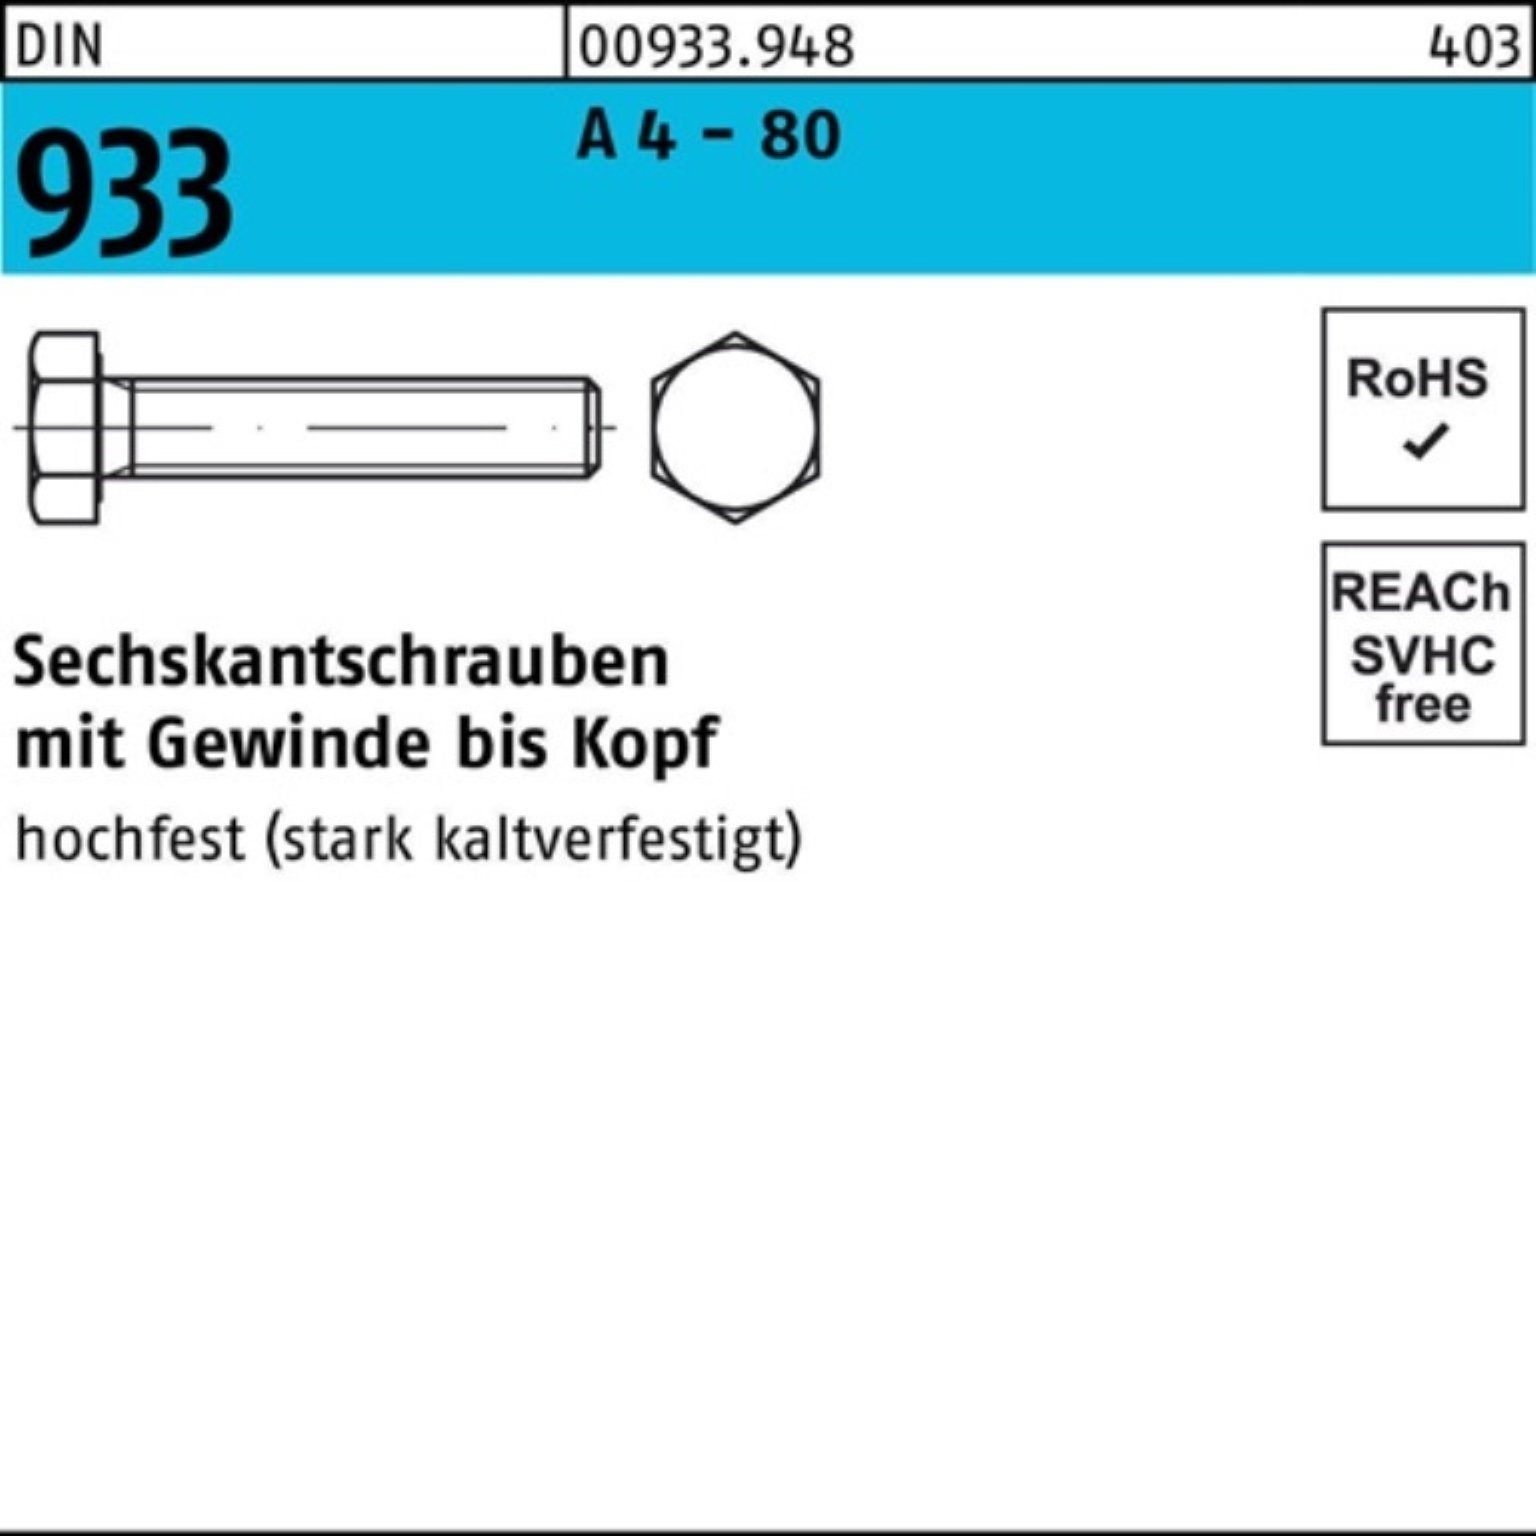 Reyher Sechskantschraube 100er Pack Sechskantschraube DIN 933 VG M16x 45 A 4 - 80 50 Stück DIN